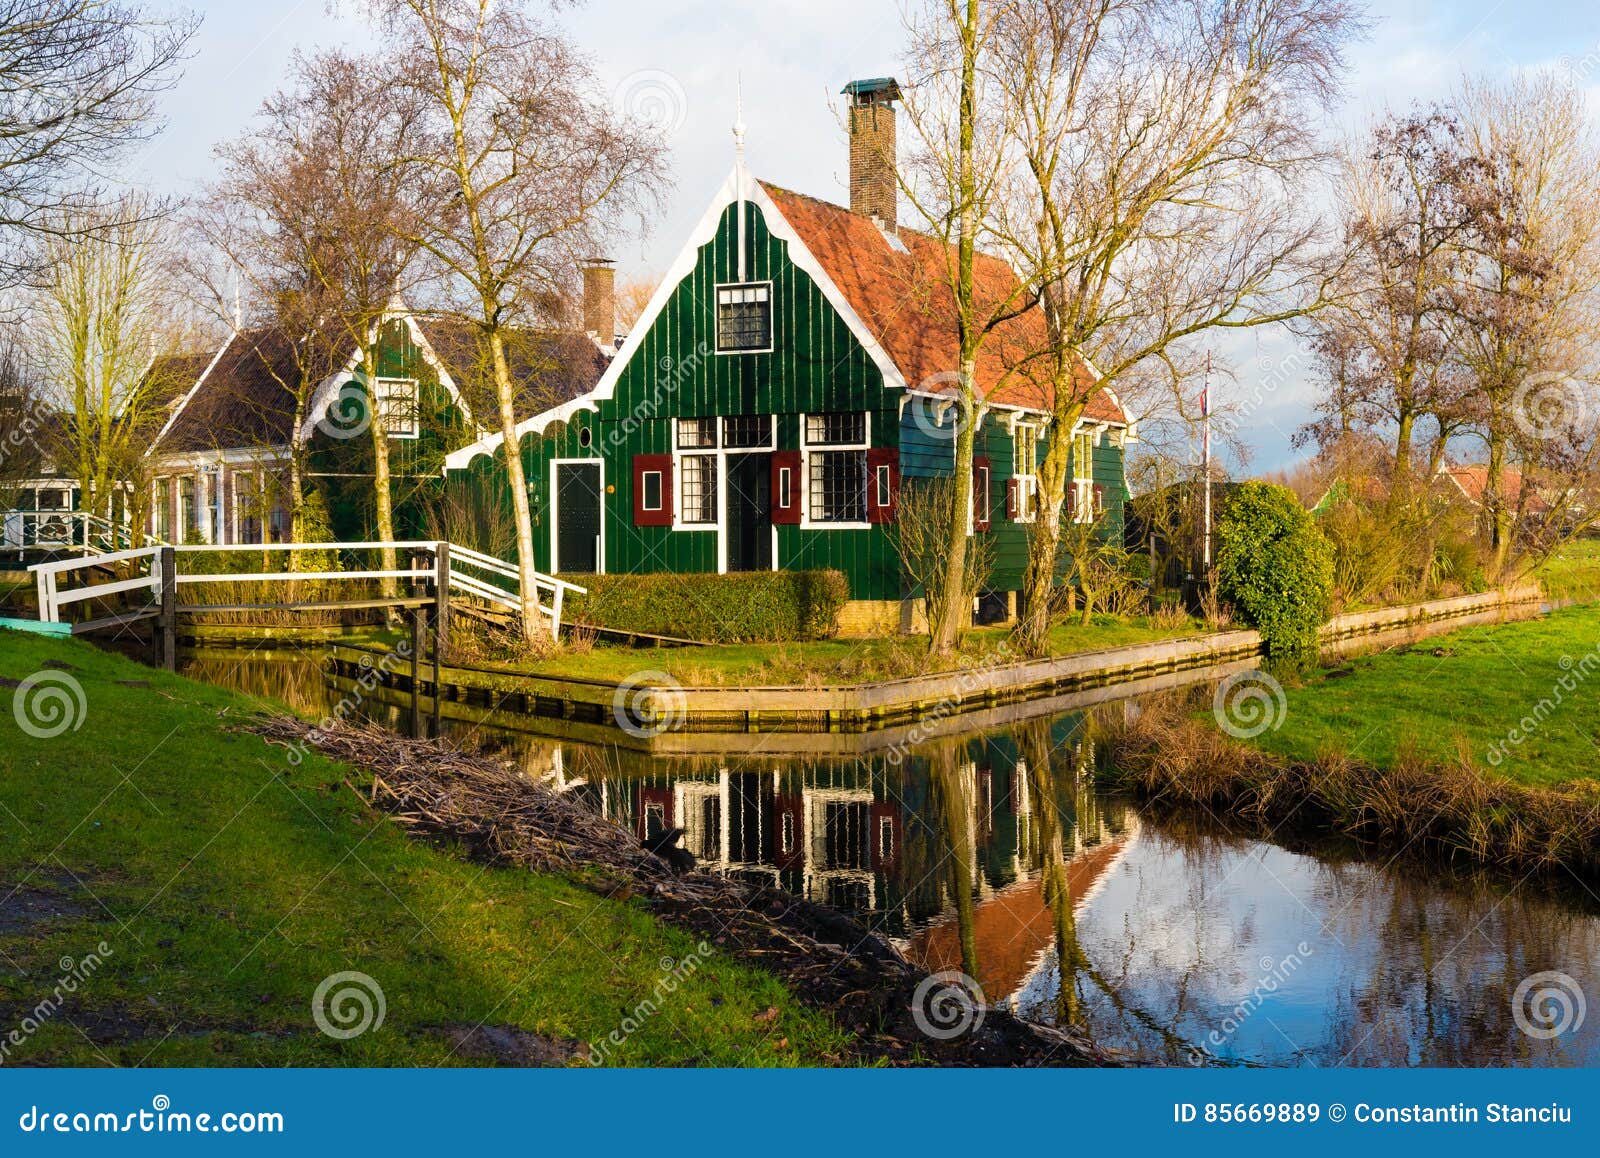 Rural Dutch Scenery in Zaanse Schans Village Editorial Stock Image ...